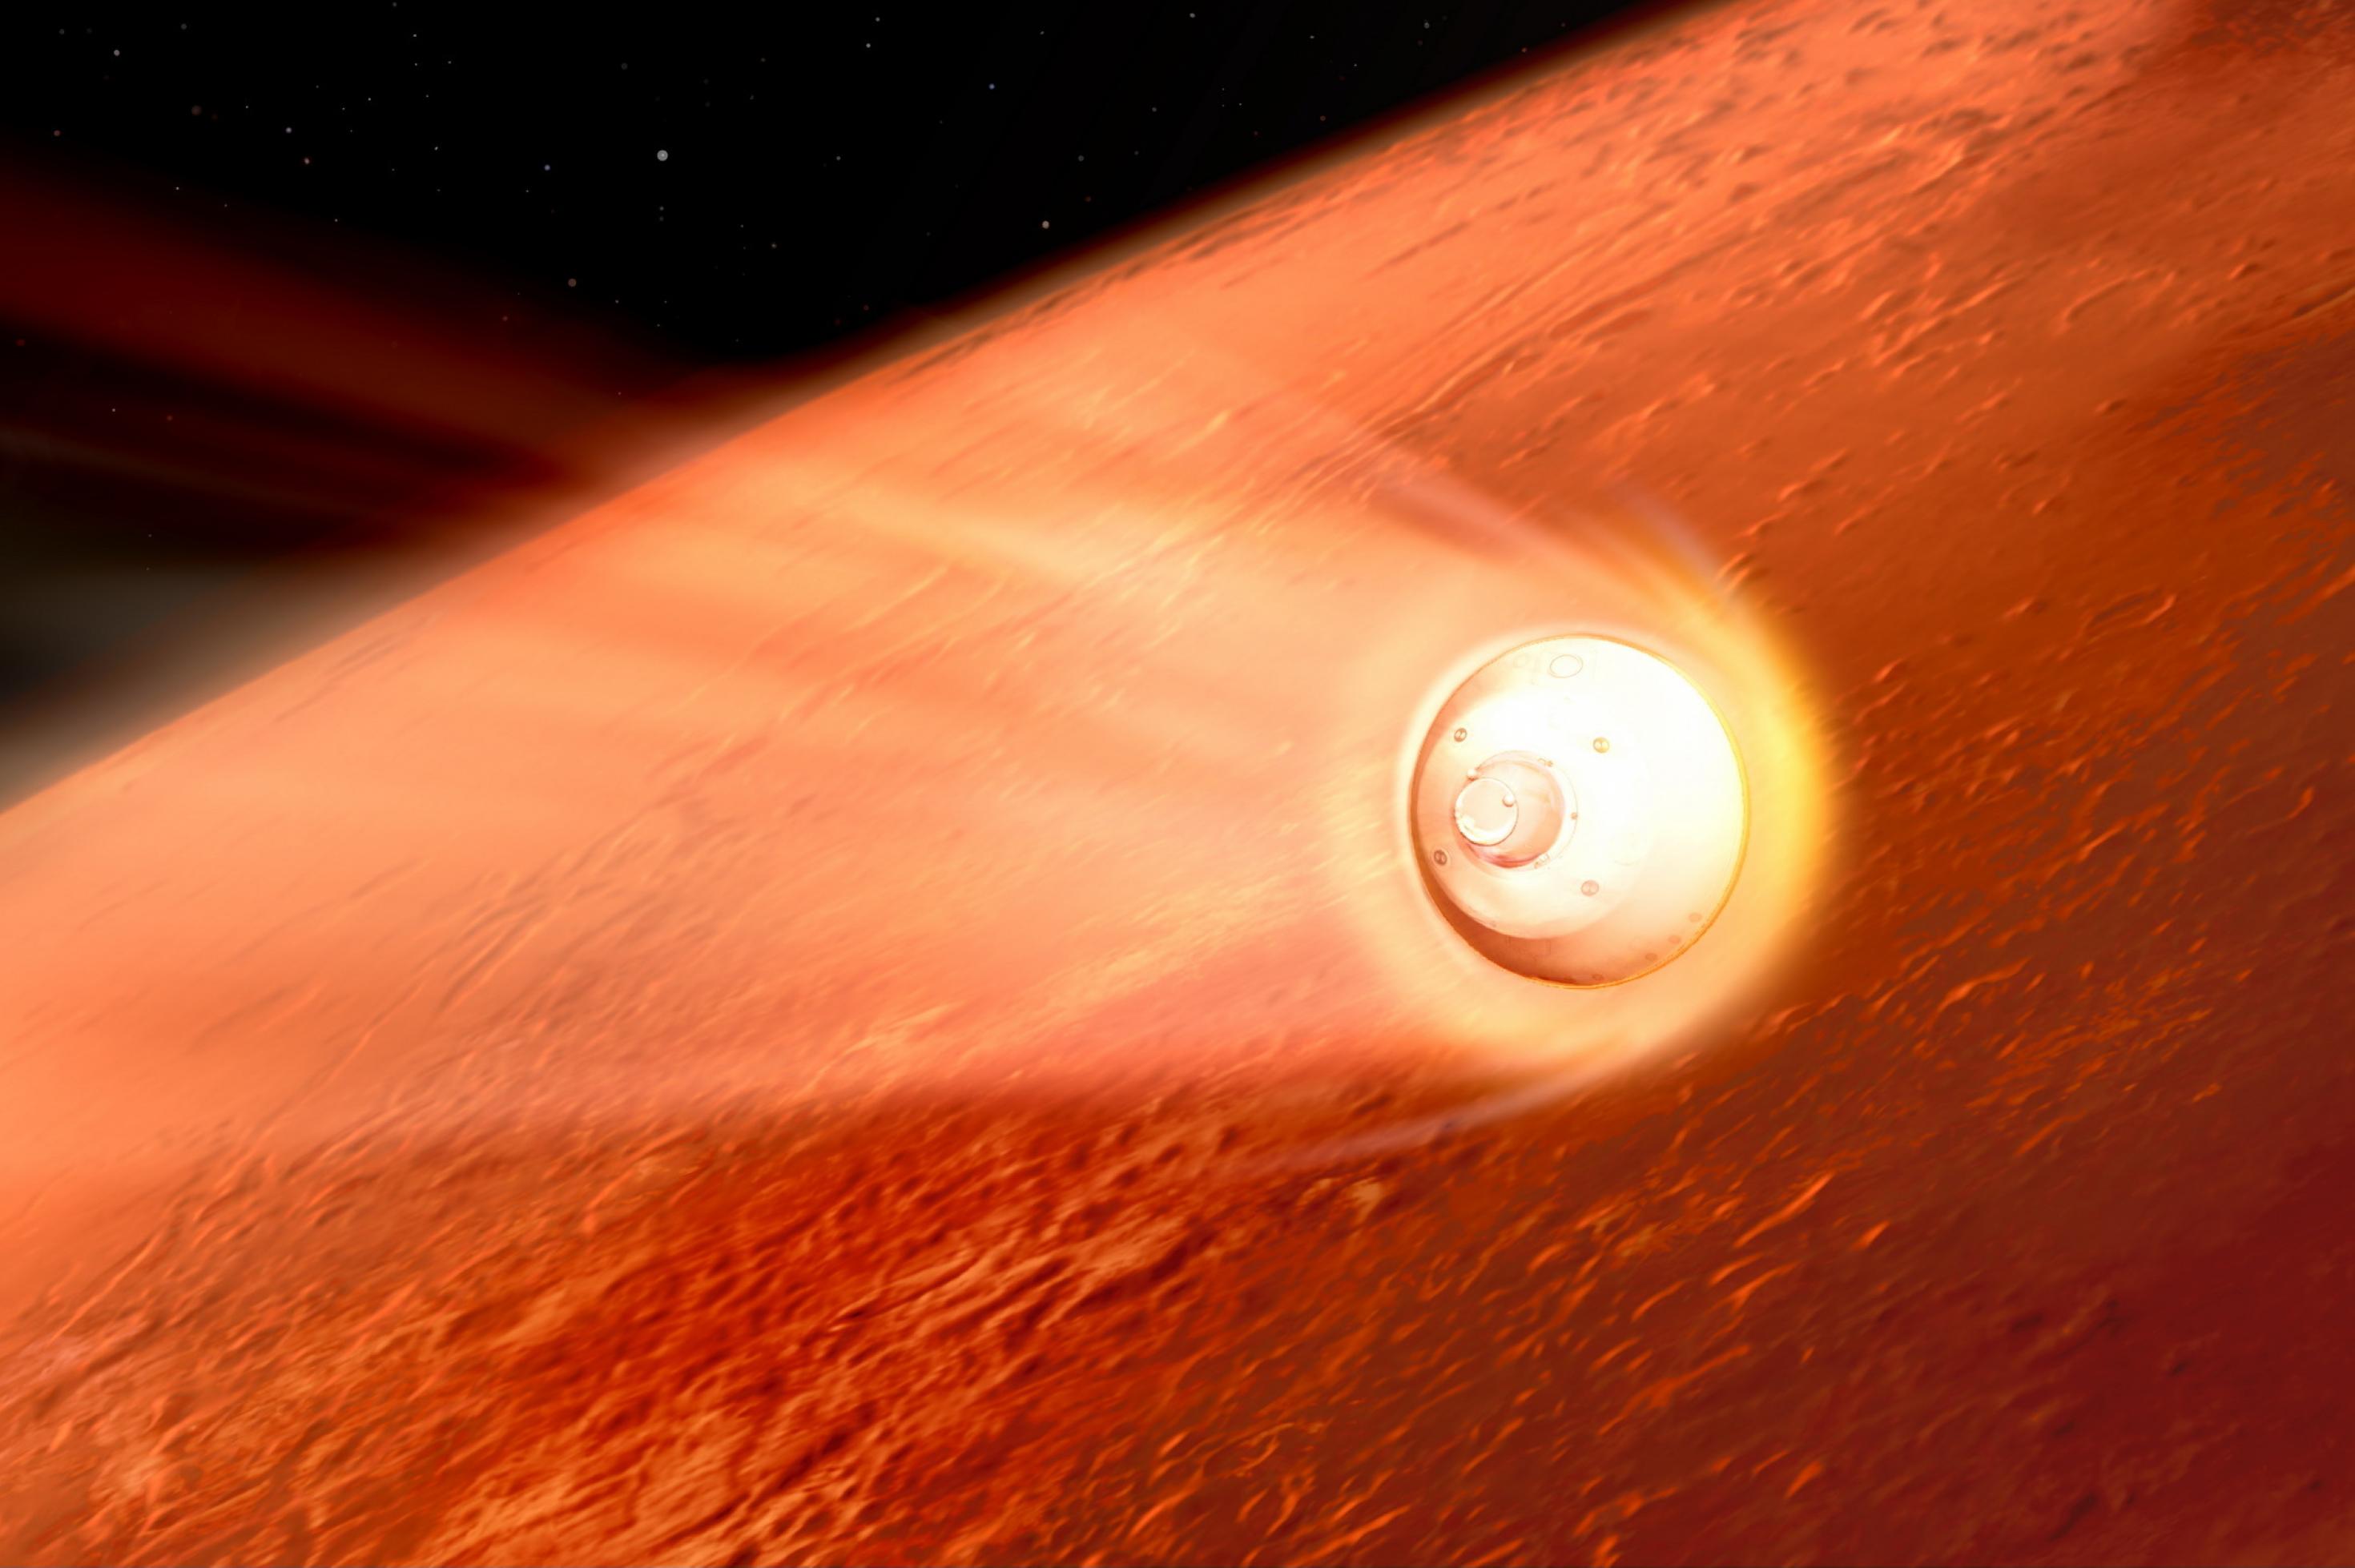 Die künstlerische Darstellung zeigt im Hintergrund einen Ausschnitt des rötlichen Planeten Mars, der zwei Drittel des Bildes einnimmt und sich vor der Schwärze des Weltalls oben links abhebt. Im Vordergrund rast von links kommend die helle Landekapsel einer Raumsonde Richtung Marsoberfläche und zieht dabei einen Schweif erhitzter Gase als Leuchtspur hinter sich her.